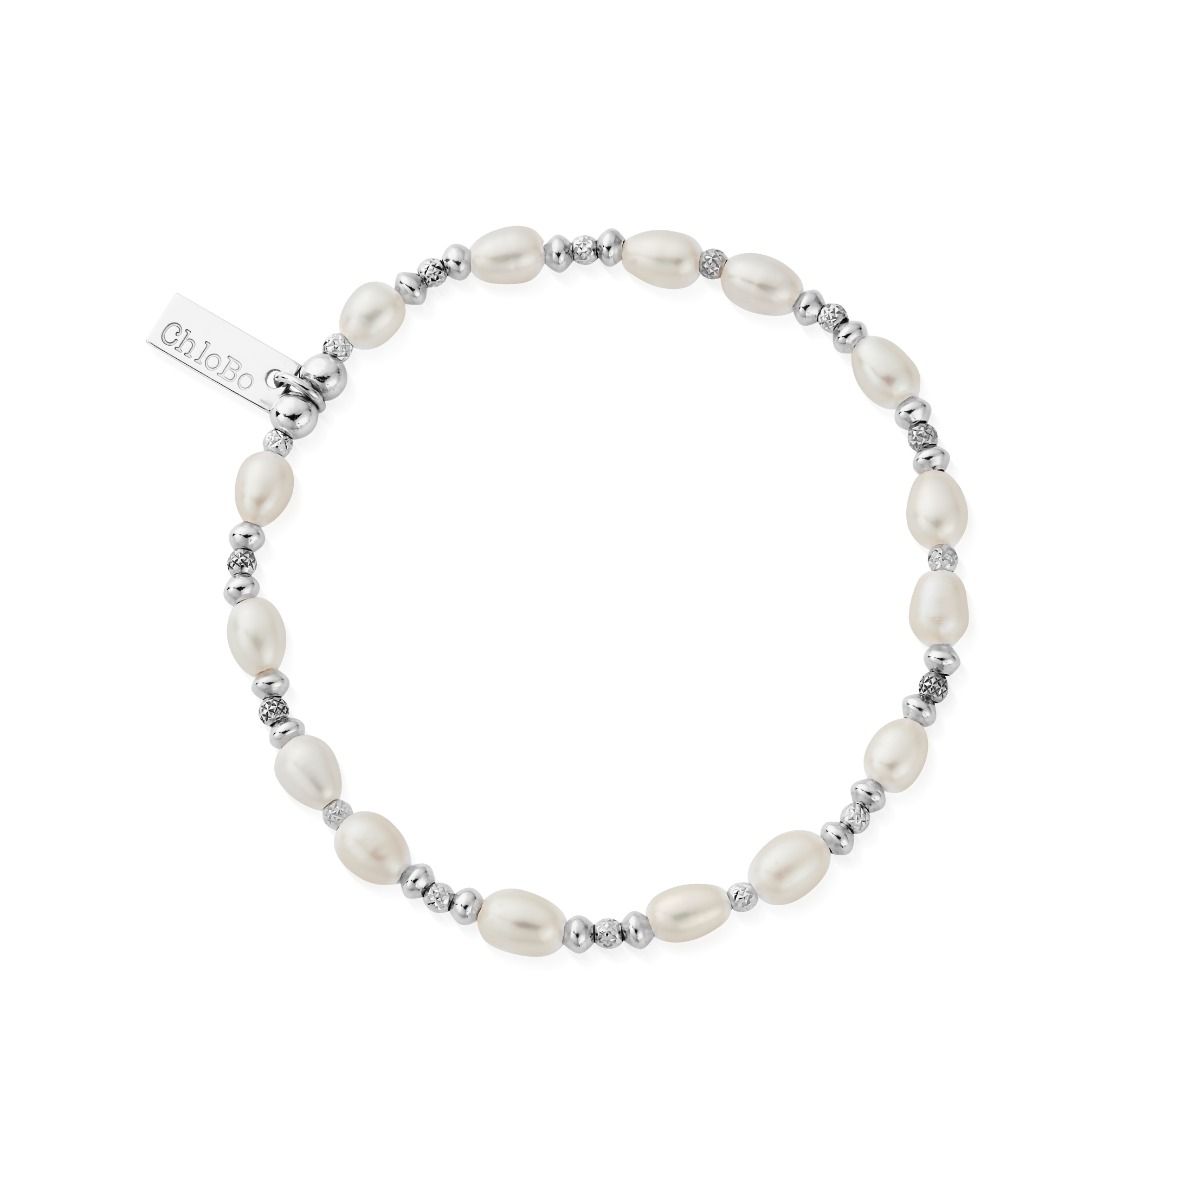 Bracelets for women│Ebony Wood, Pearl and Sterling Silver │Le BijouBijou –  lebijoubijou.com